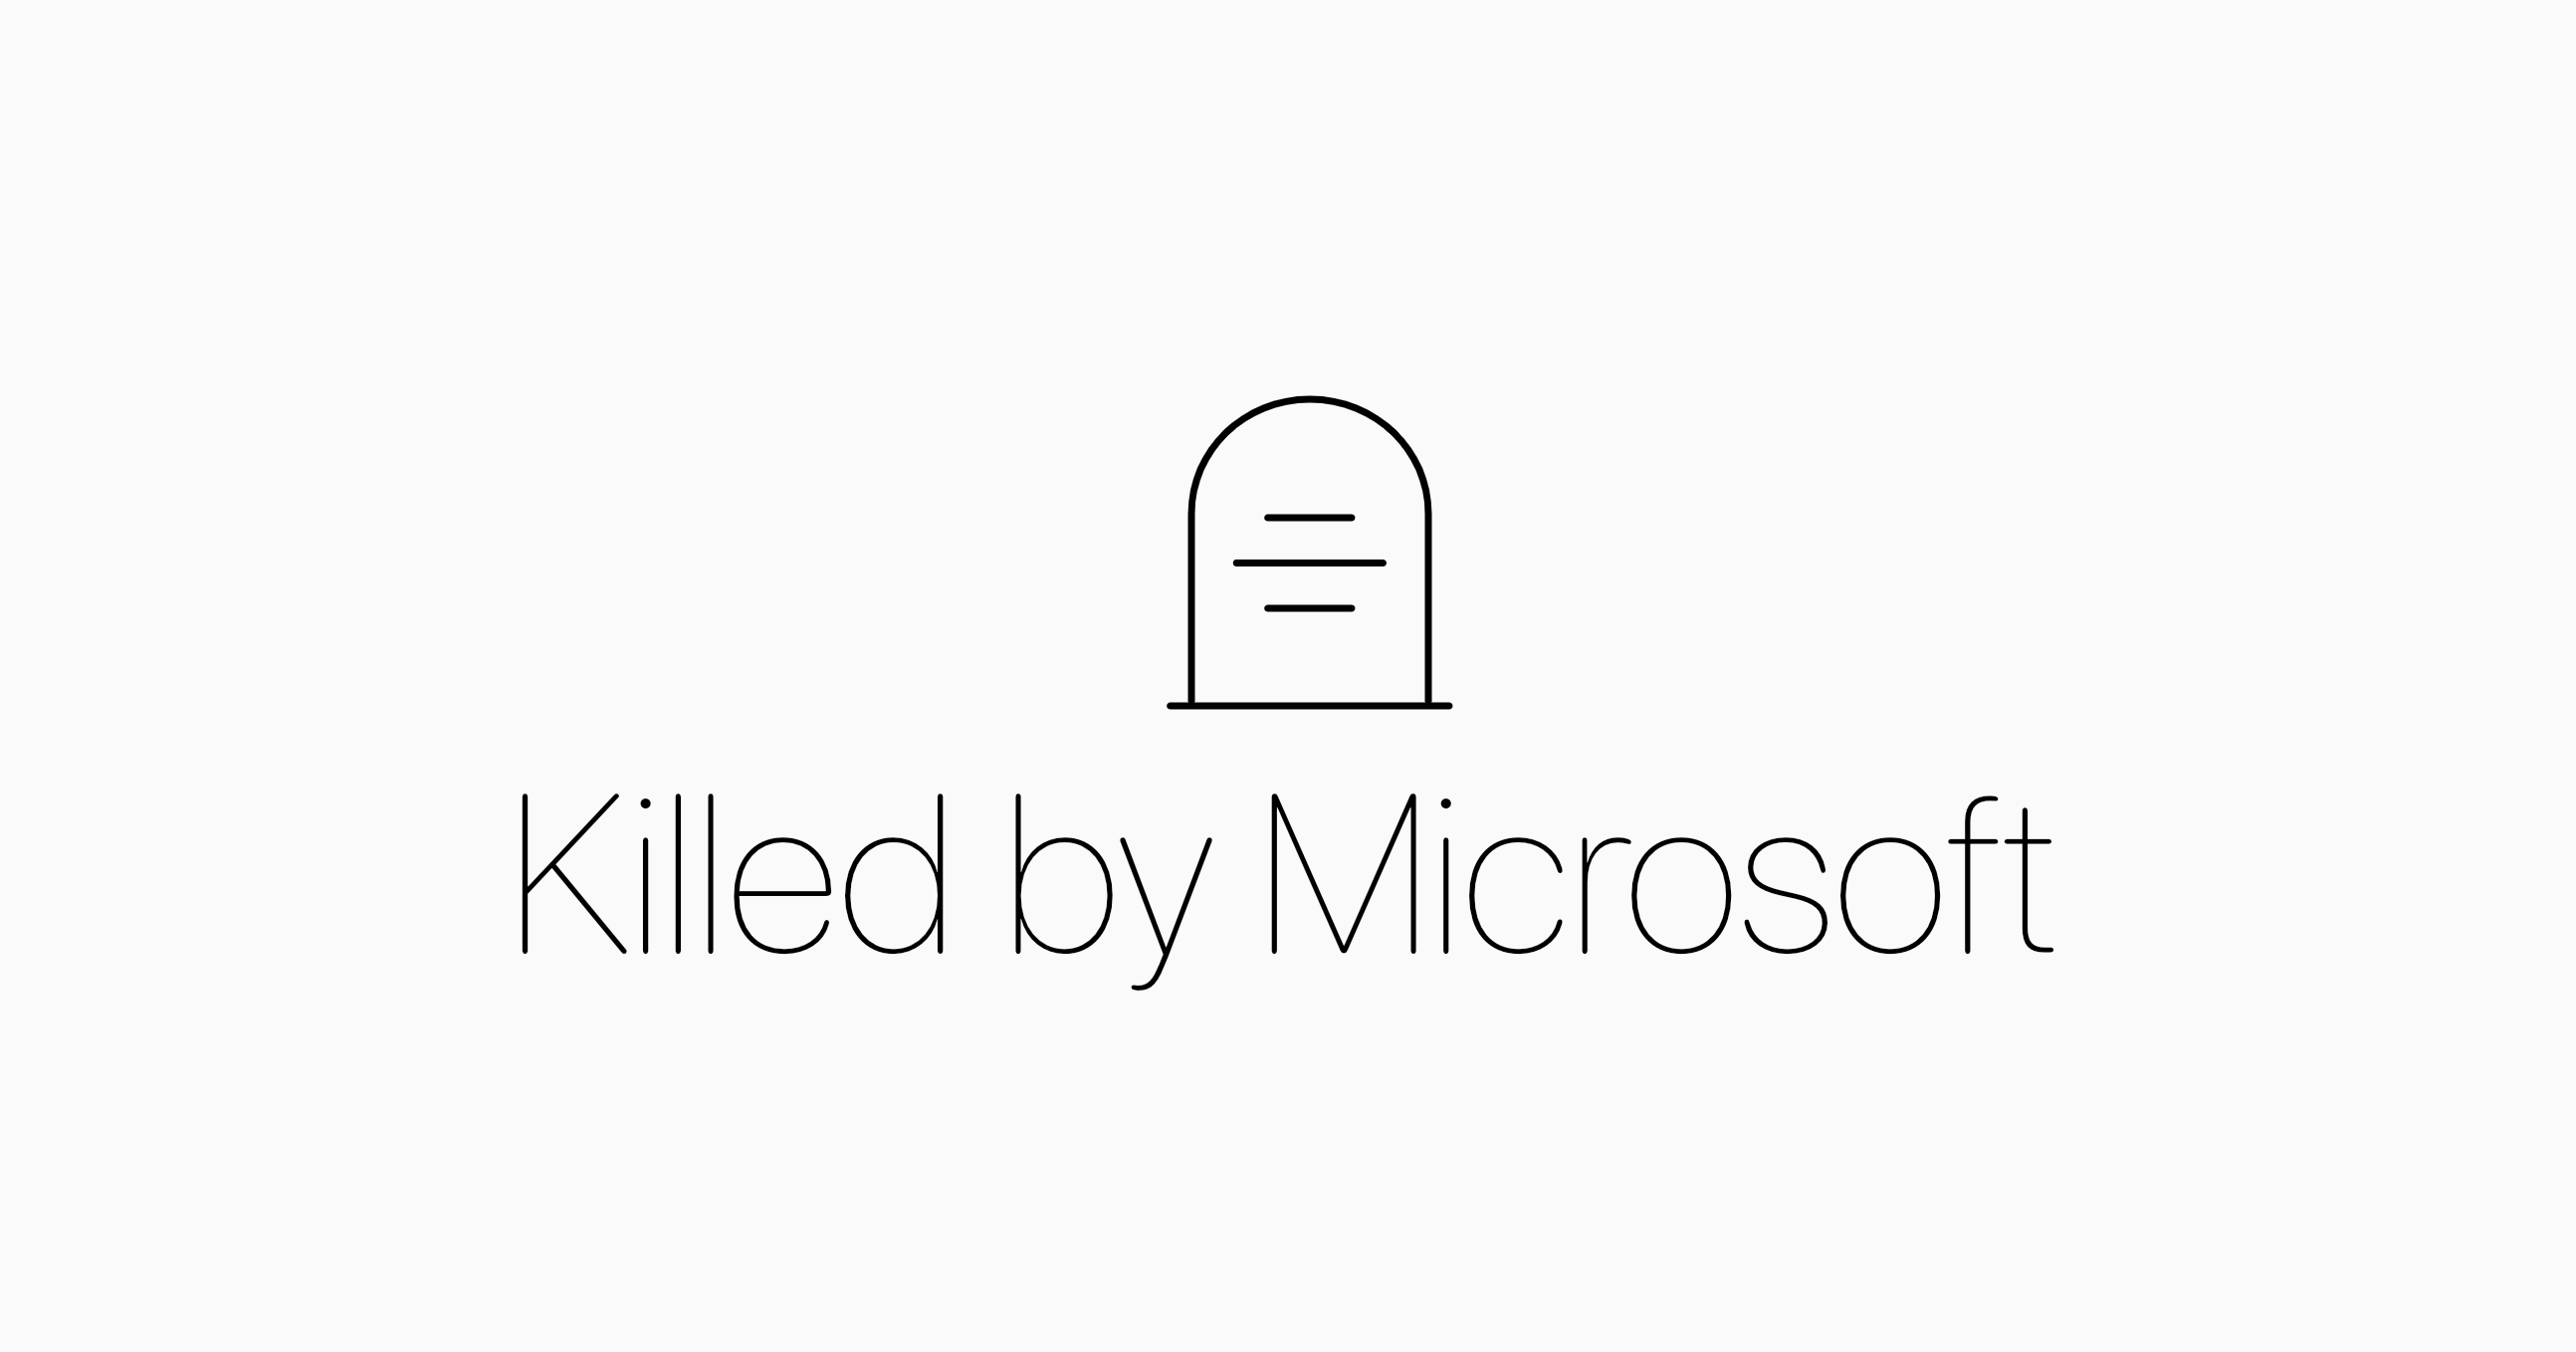 เล่นตัวเองเจ็บน้อยสุด Microsoft เปิดสุสานรวบรวมโปรเจ็คที่ไม่ได้ไปต่อด้วยมือของตัวเอง